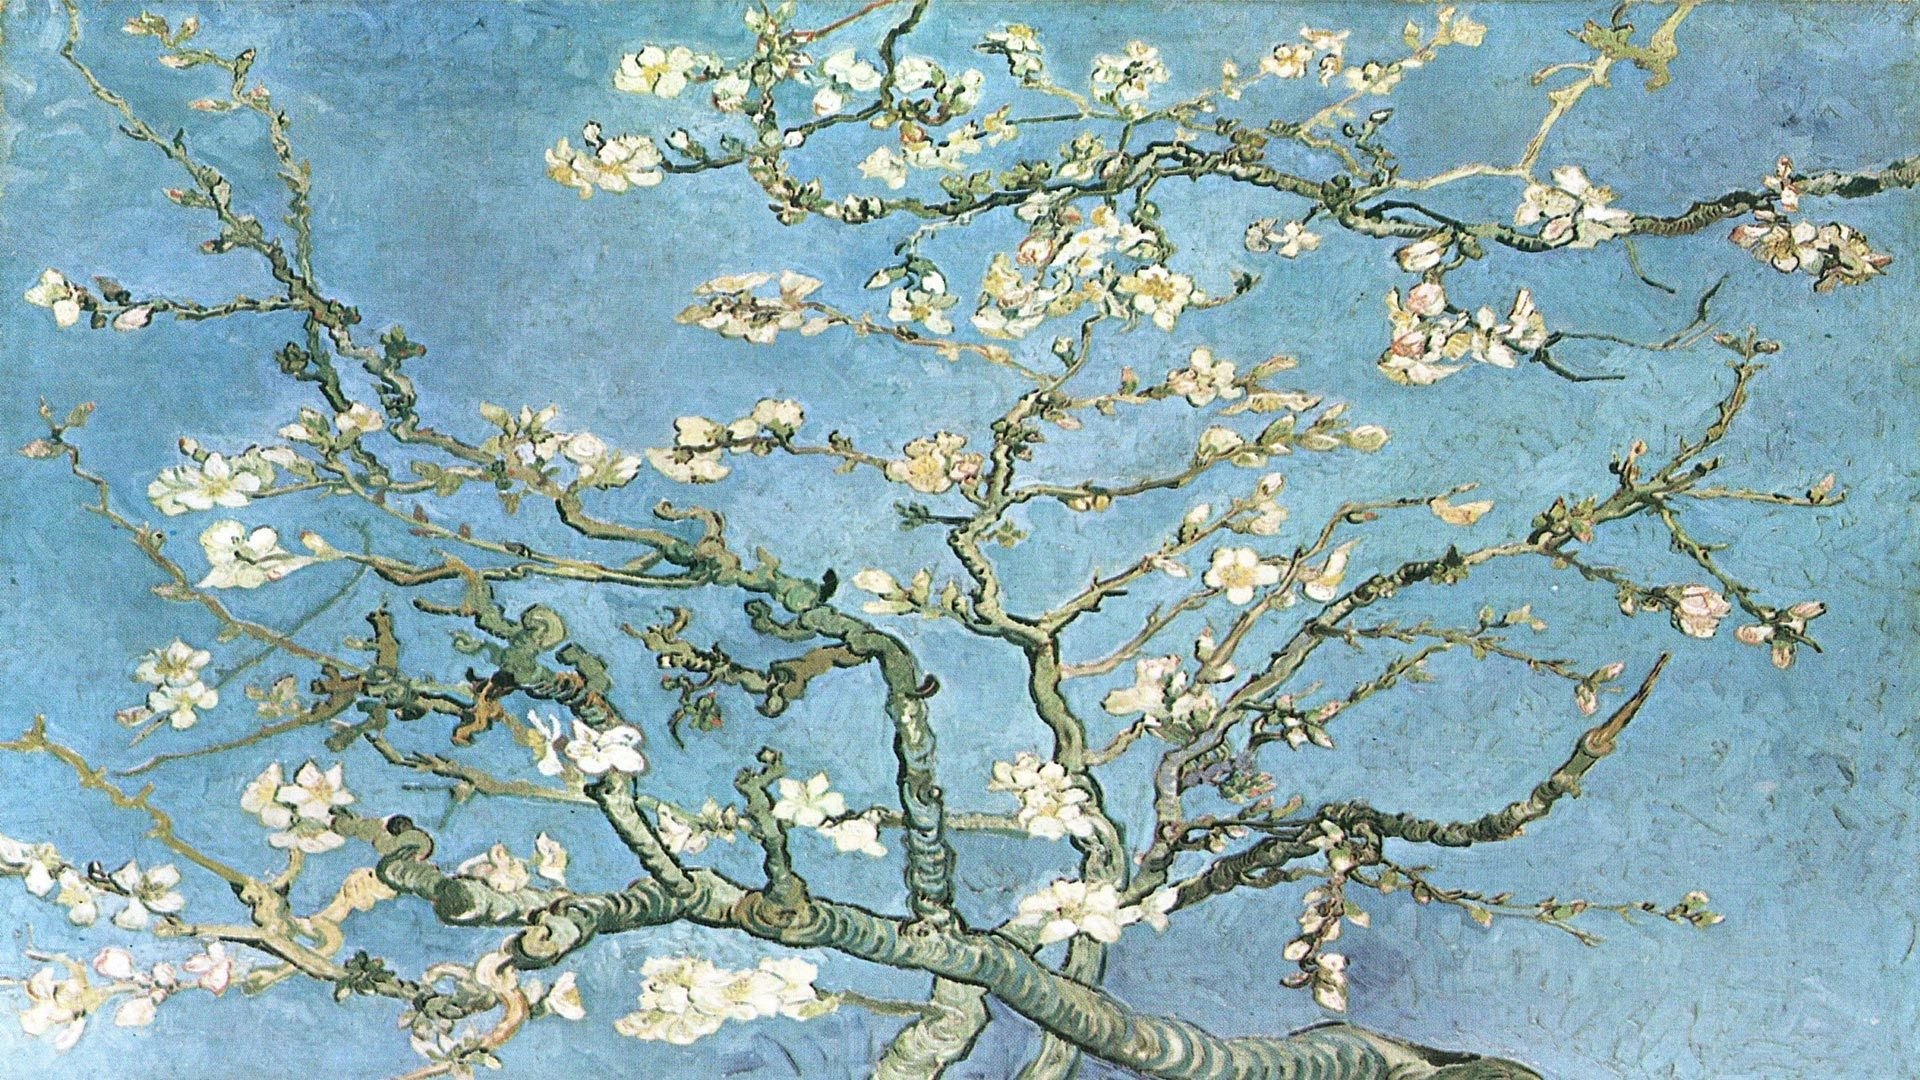 HD wallpaper Van Gogh – một bộ sưu tập nghệ thuật đầy màu sắc với những tác phẩm nổi tiếng nhất của họa sĩ. Hình nền chất lượng cao này sẽ khiến bạn phải ngỡ ngàng bởi sự sống động của họa tiết và màu sắc. Tải xuống và trang trí máy tính của bạn với những hình ảnh tuyệt đẹp này.